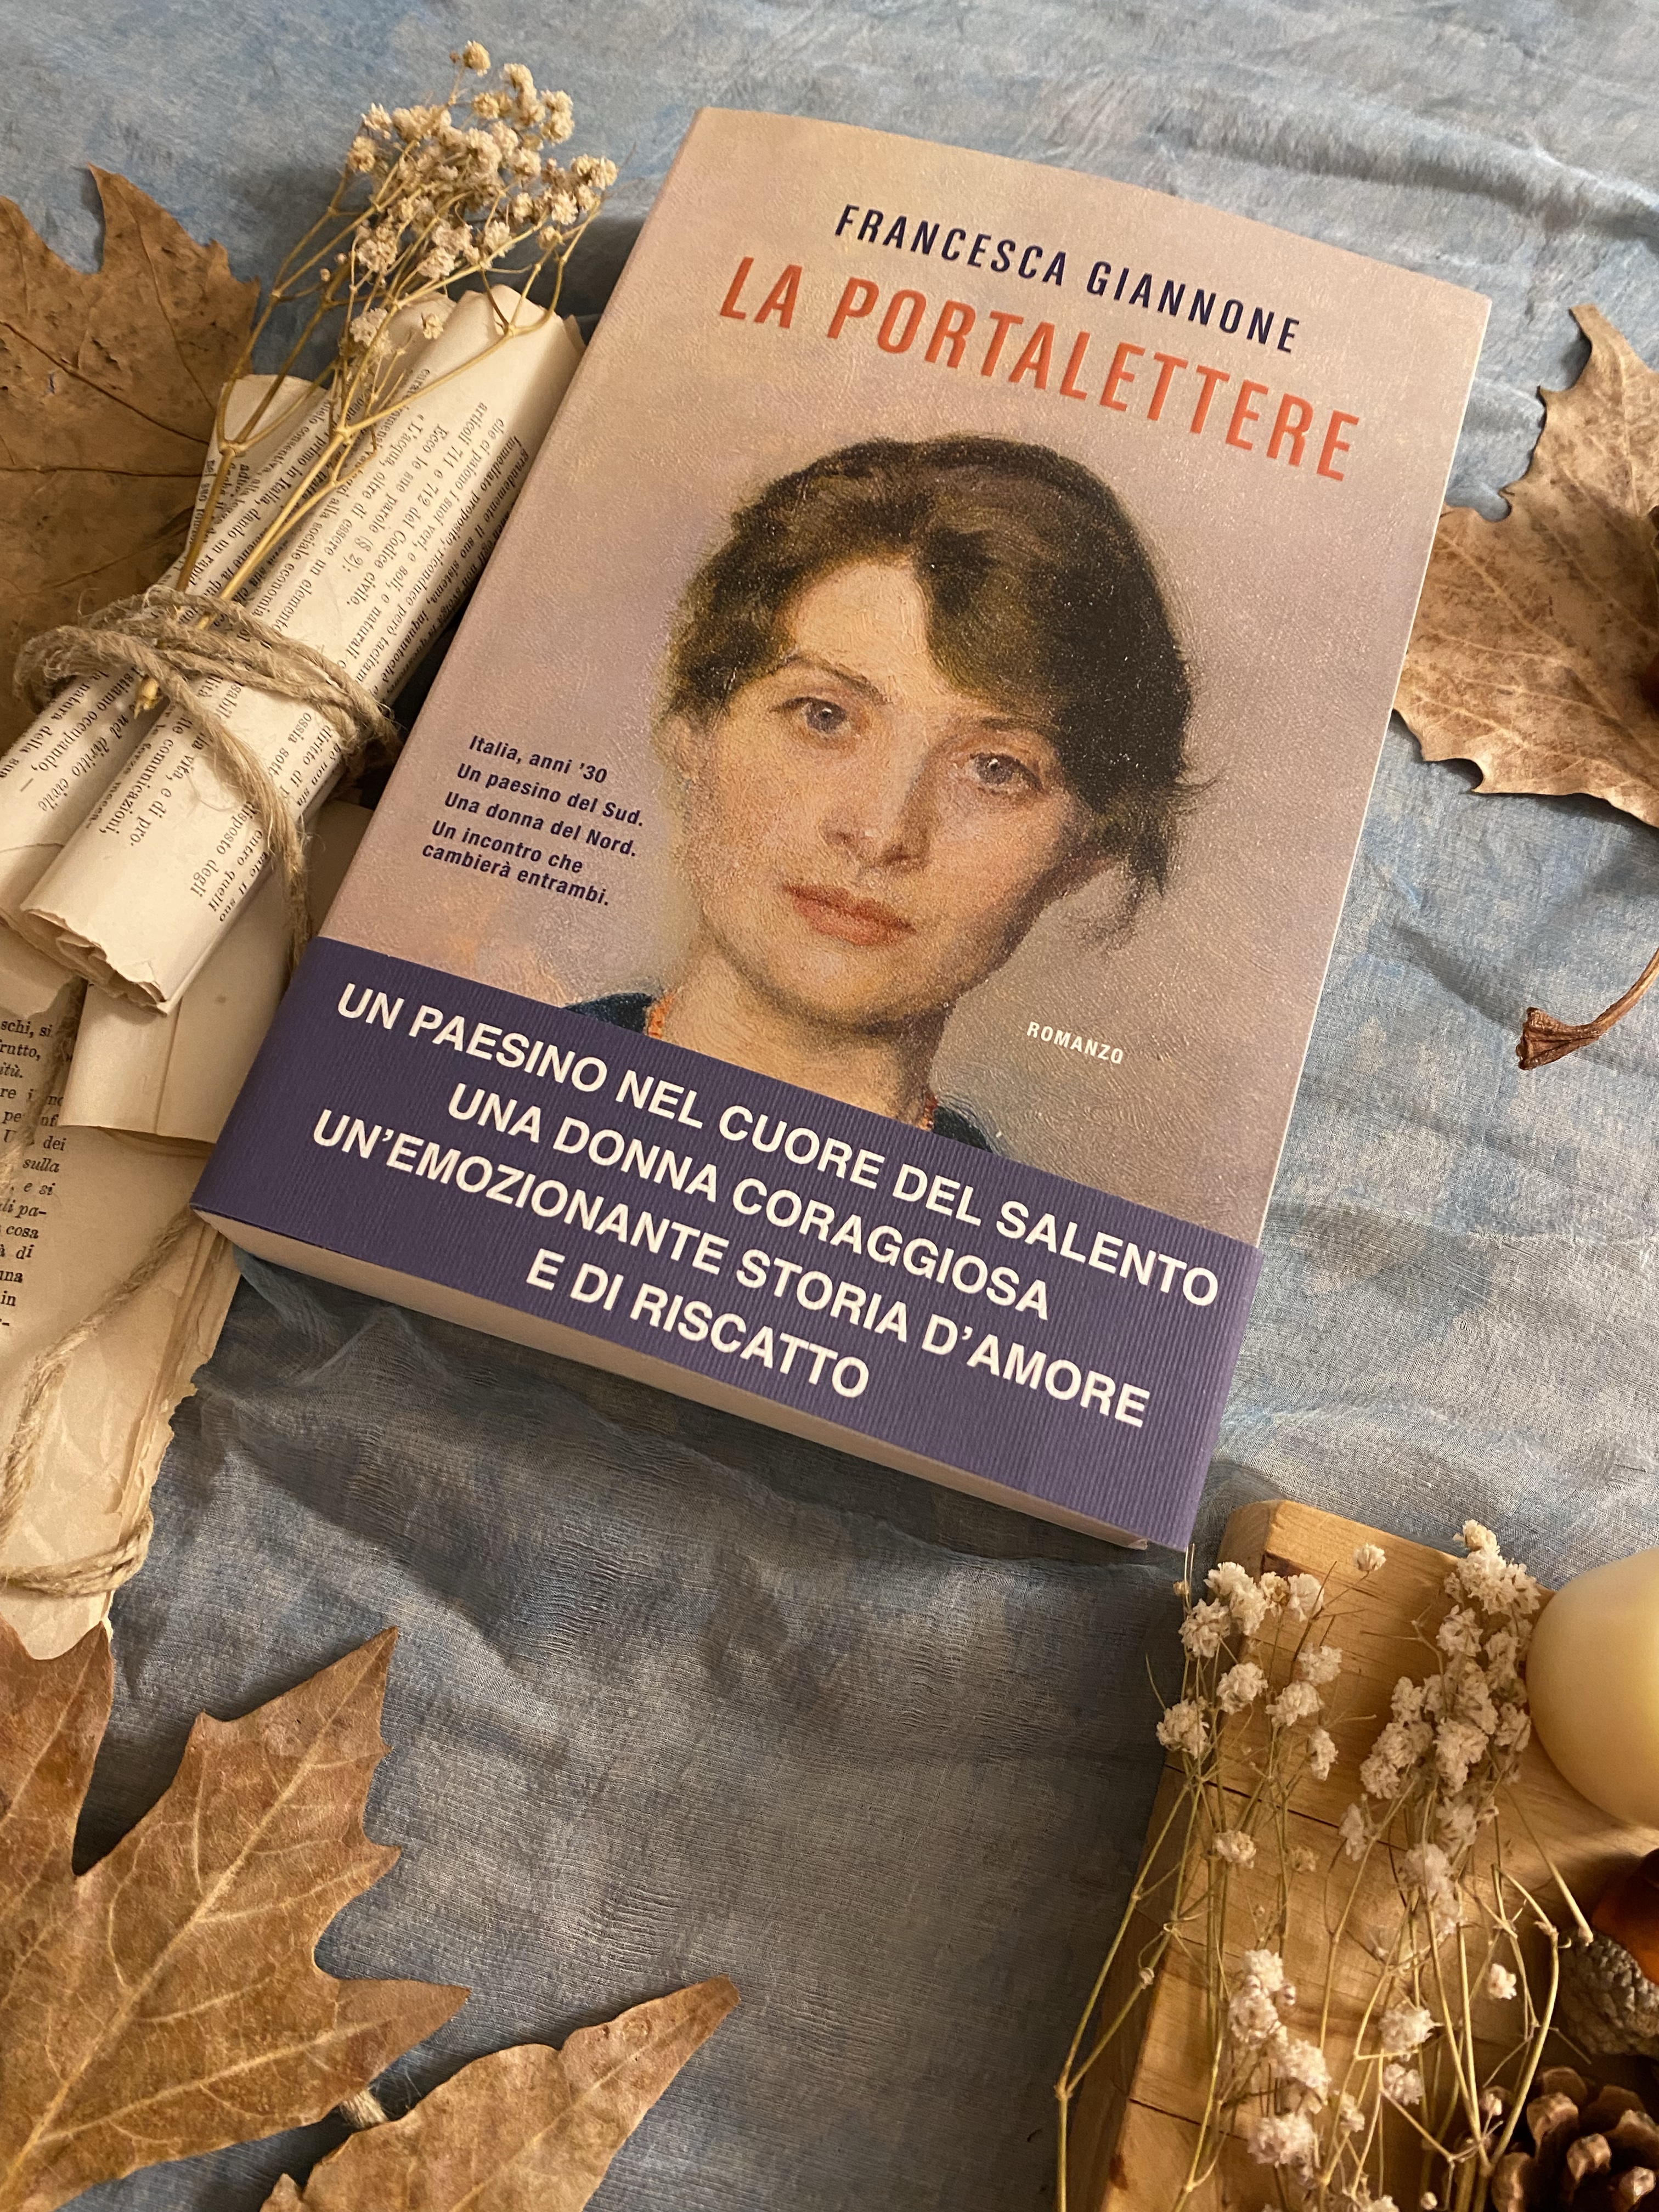 La portalettere - Francesca Giannone - Libro - Nord - Narrativa Nord